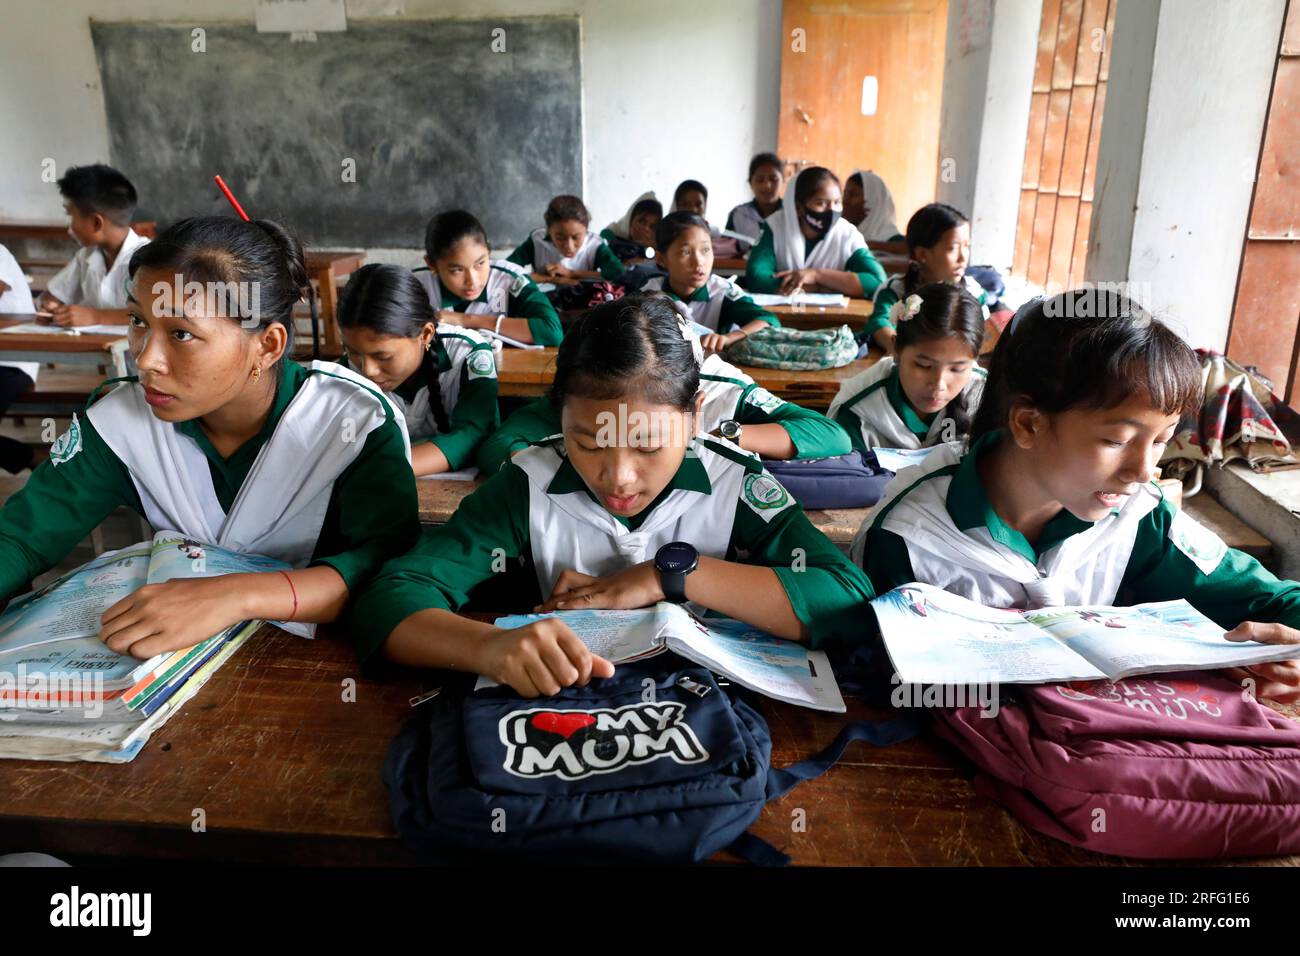 Bandarban, Bangladesch - 27. Juli 2023: Dasselbe Lehrplansystem für Stammes- und bengalische Studenten der hügeligen Regionen Bangladeschs. Stockfoto